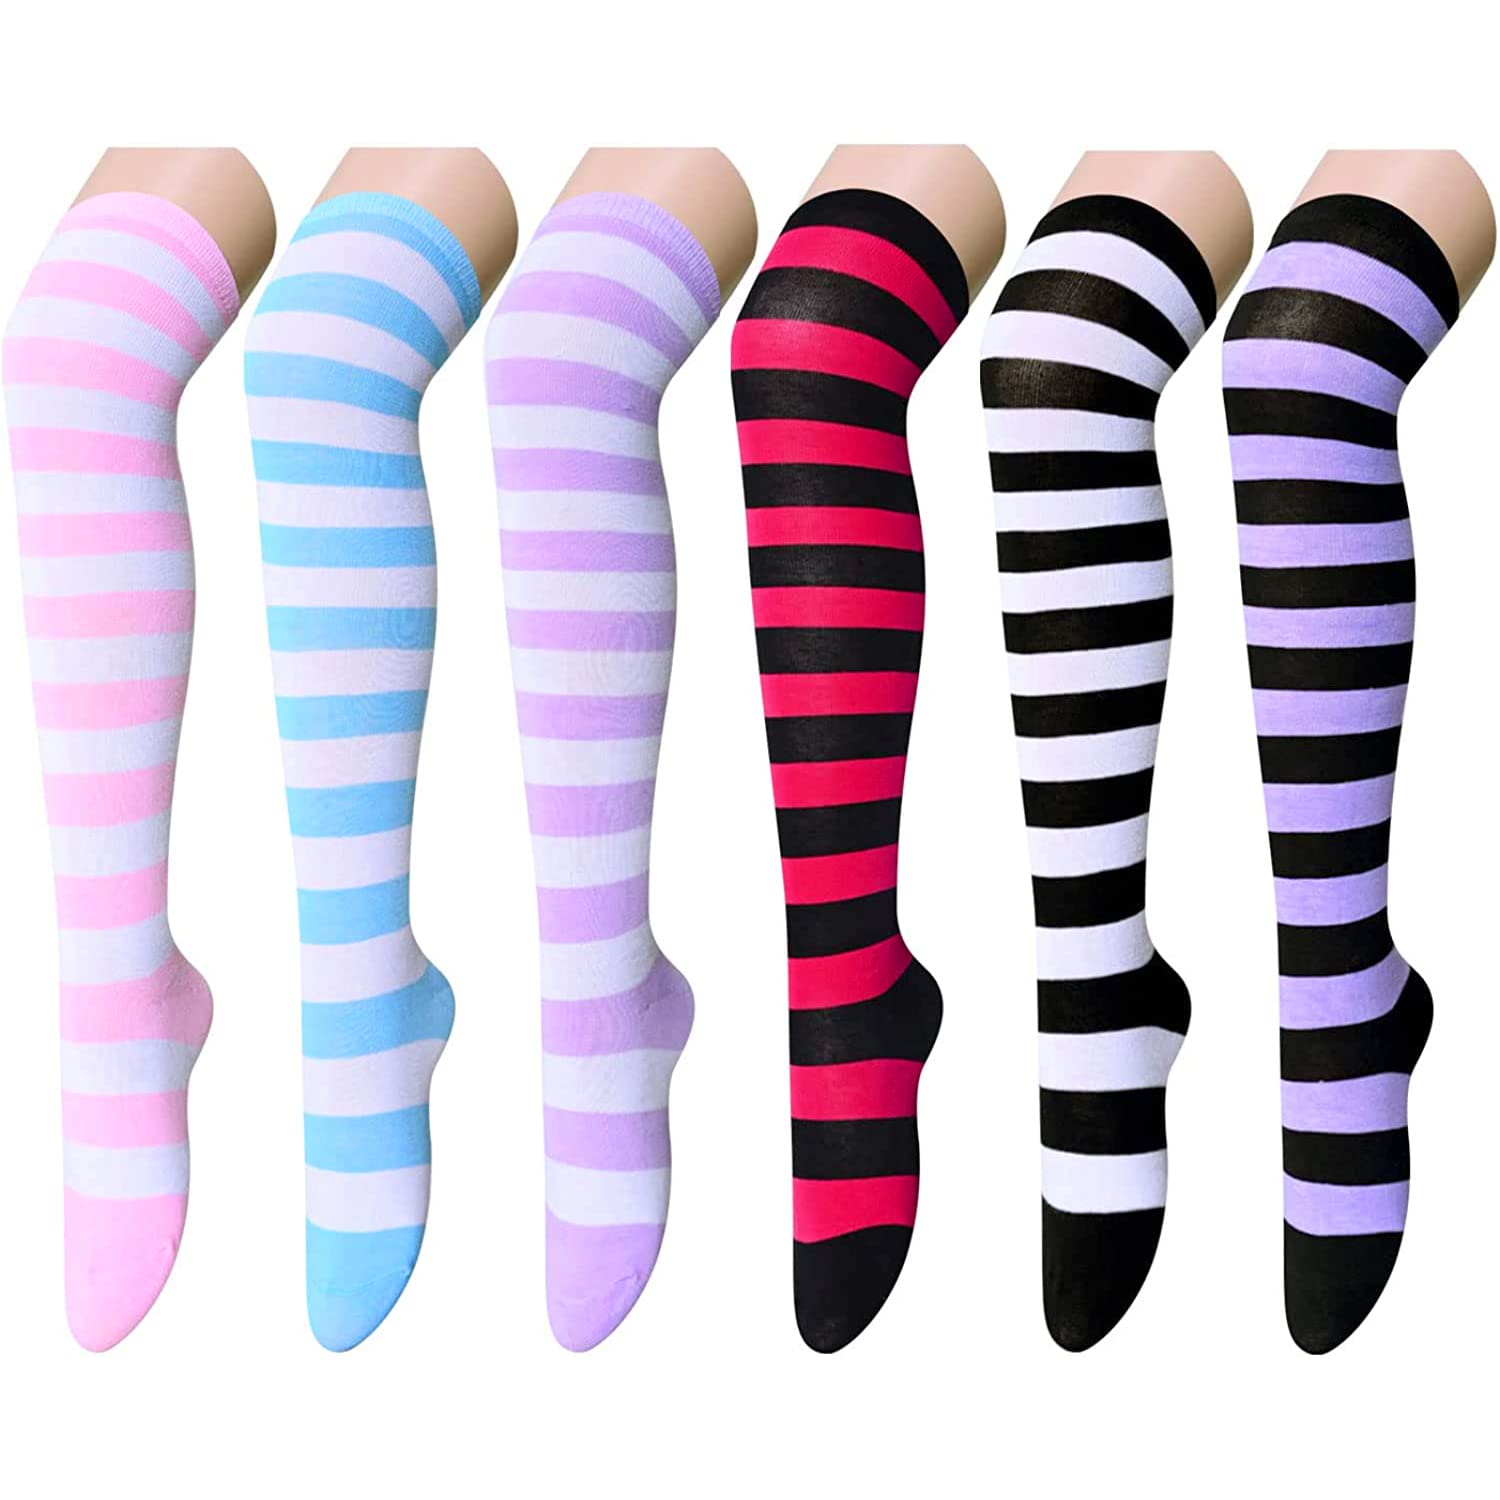 Zmart Striped Thigh High Socks Knee High Socks for Women Teen Girls, Over  the Knee Long Socks